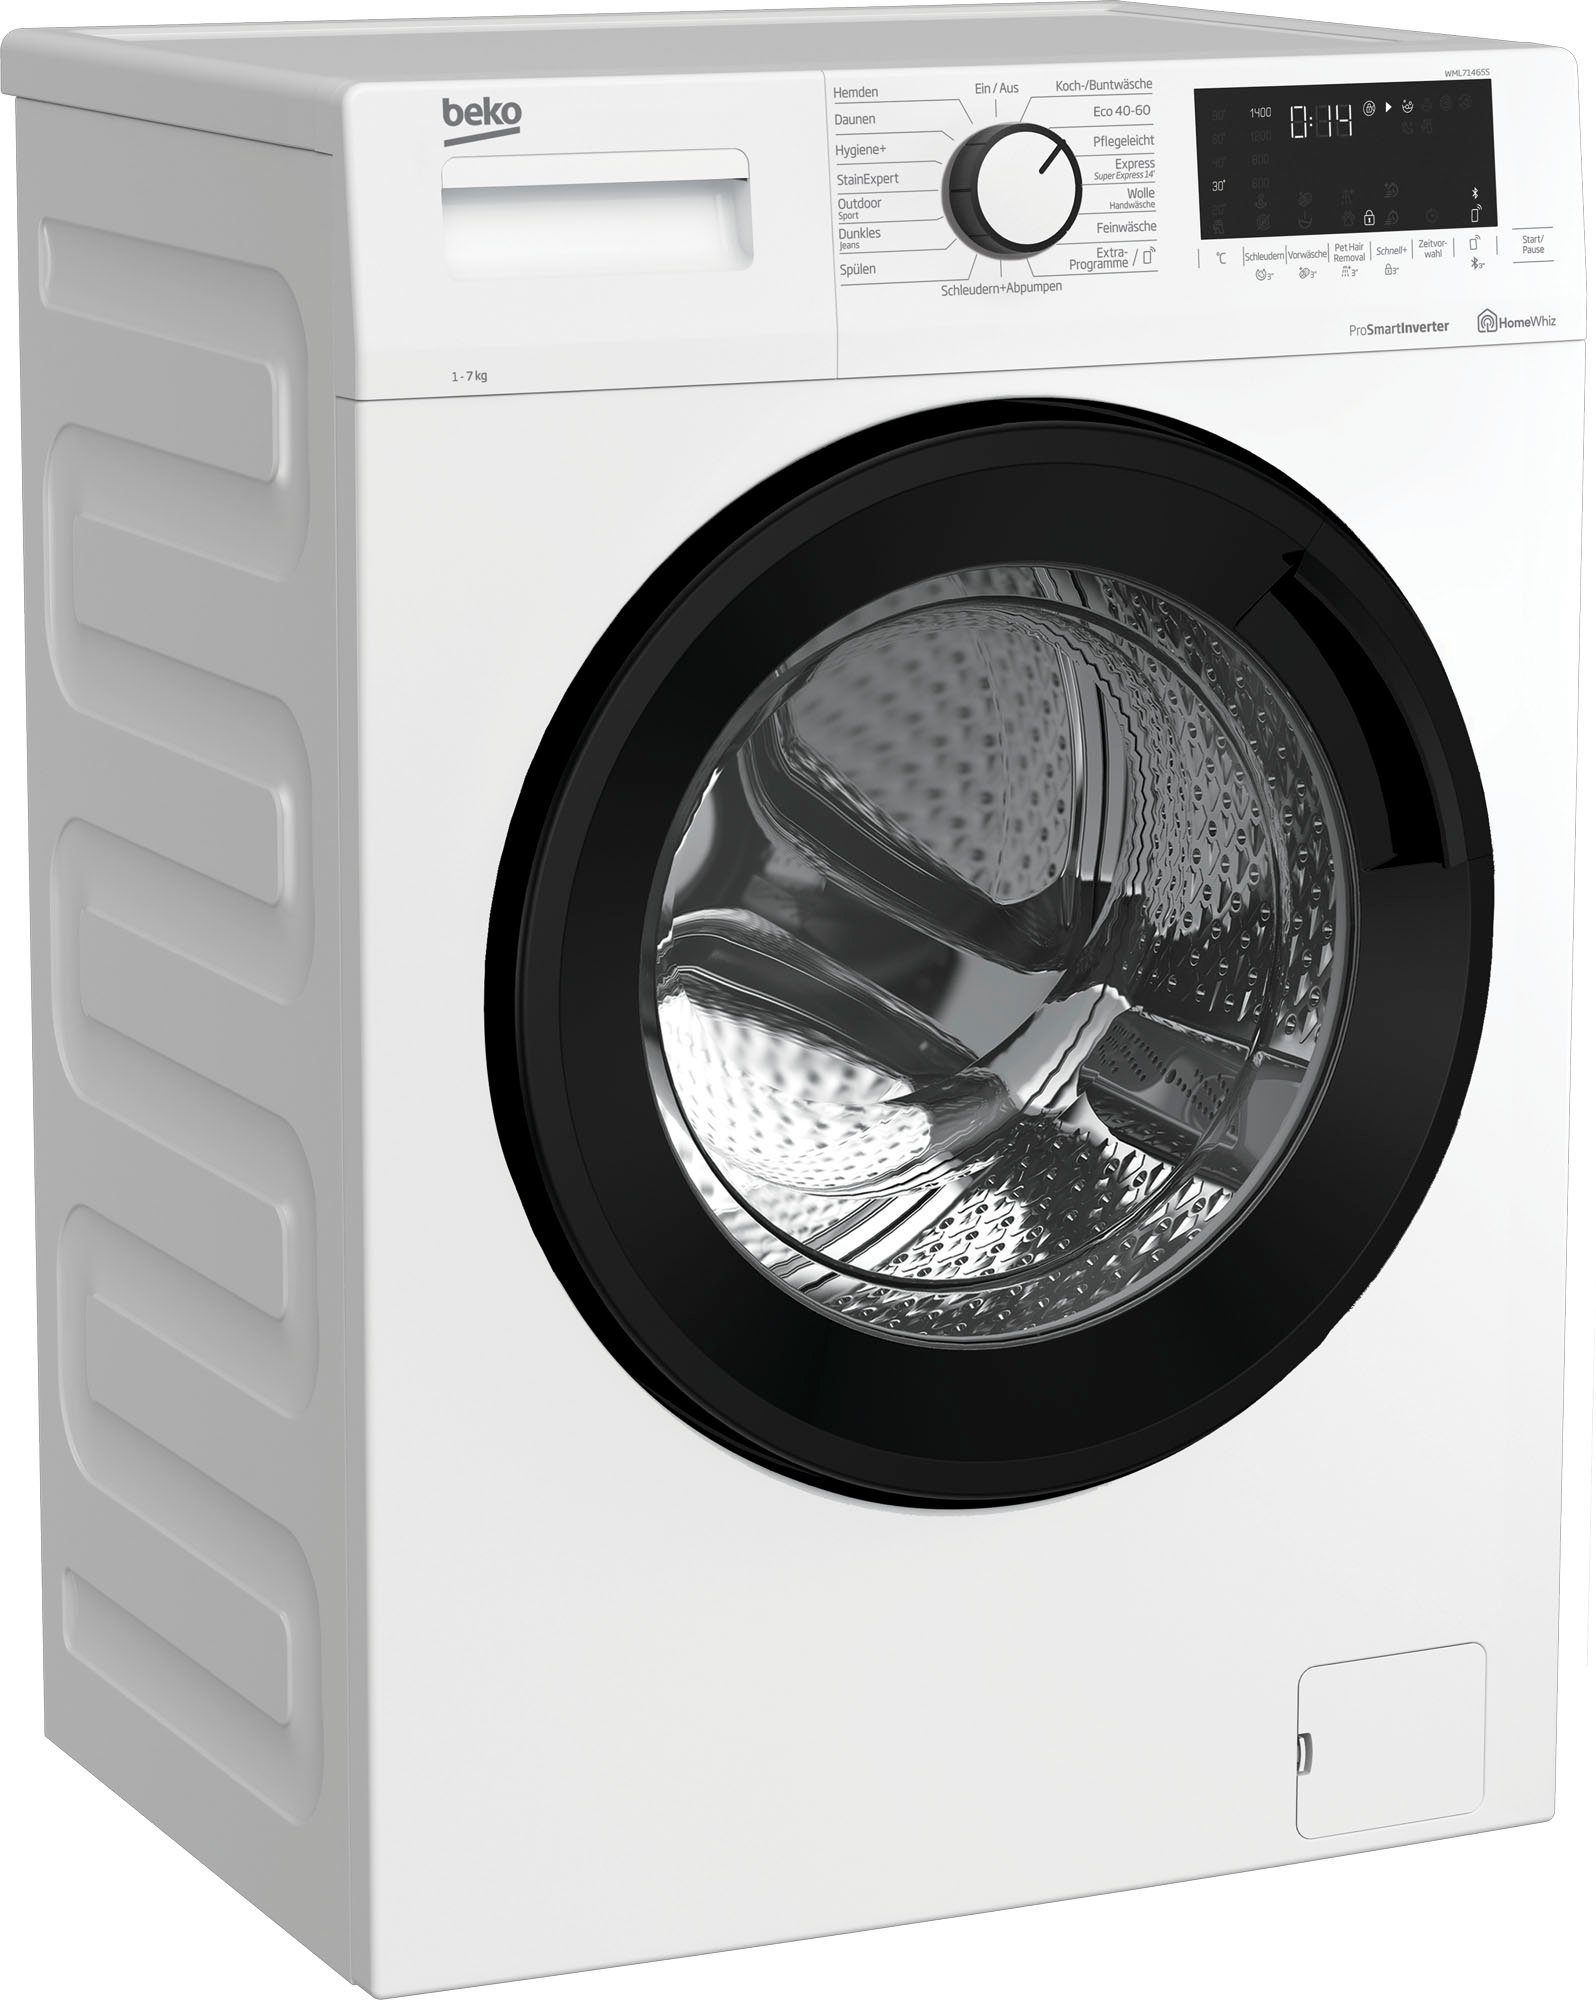 Preisermäßigung BEKO Waschmaschine WML71465S, 7 kg, 1400 U/min